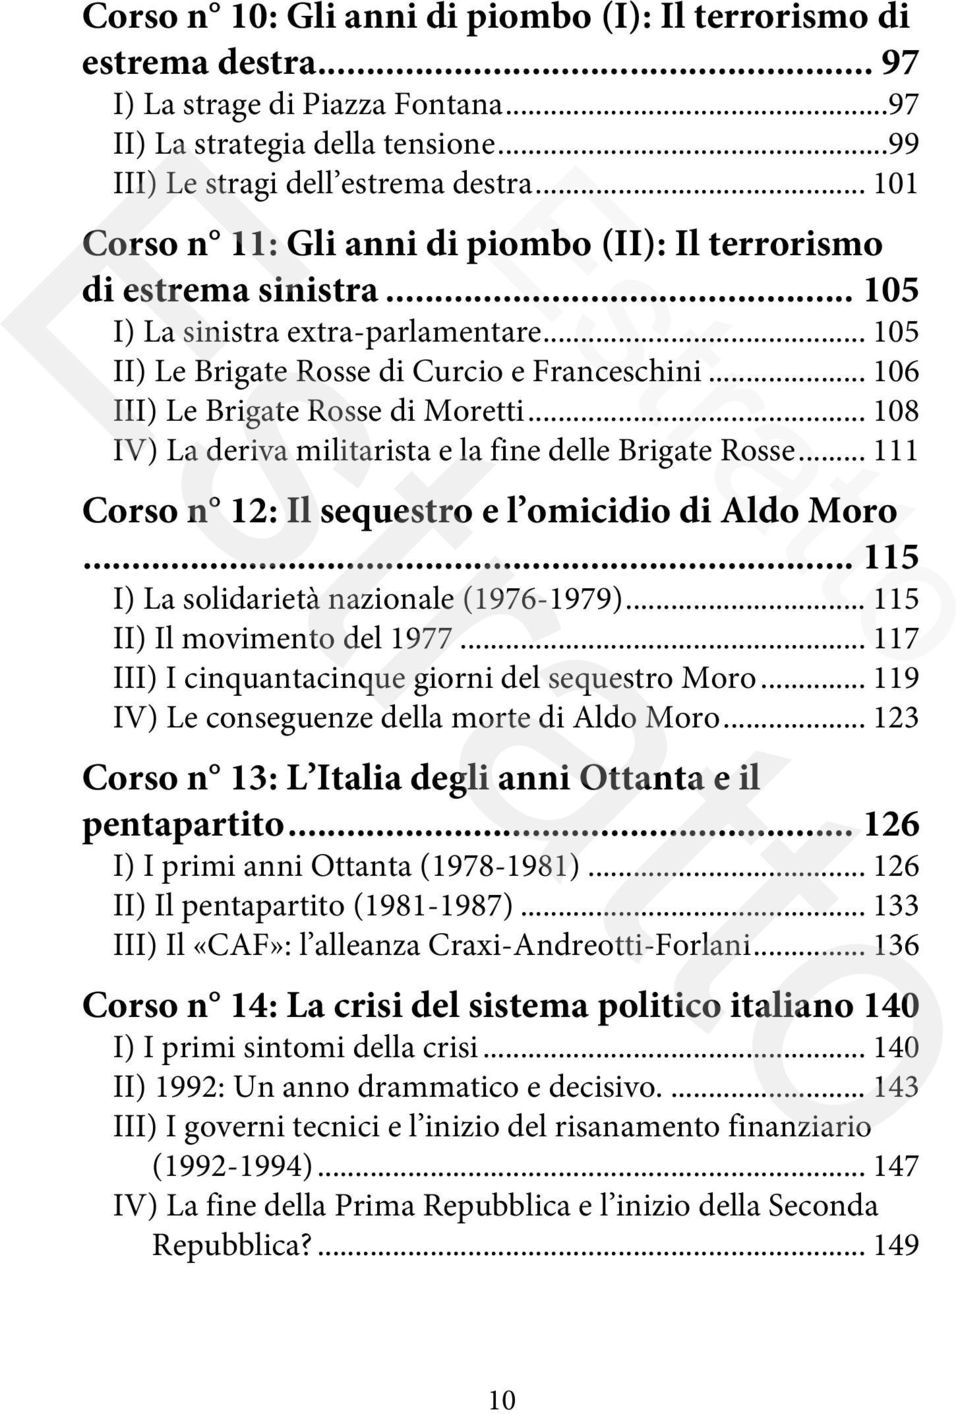 .. 176! III) Prodi II: Il governo dei senatori a vita (2006-2008)... 177! IV) Il «regno» berlusconiano (dal 2008 ad oggi)... 179! V) Bilancio (provvisorio) dei governi Berlusconi... 181! Conclusione.